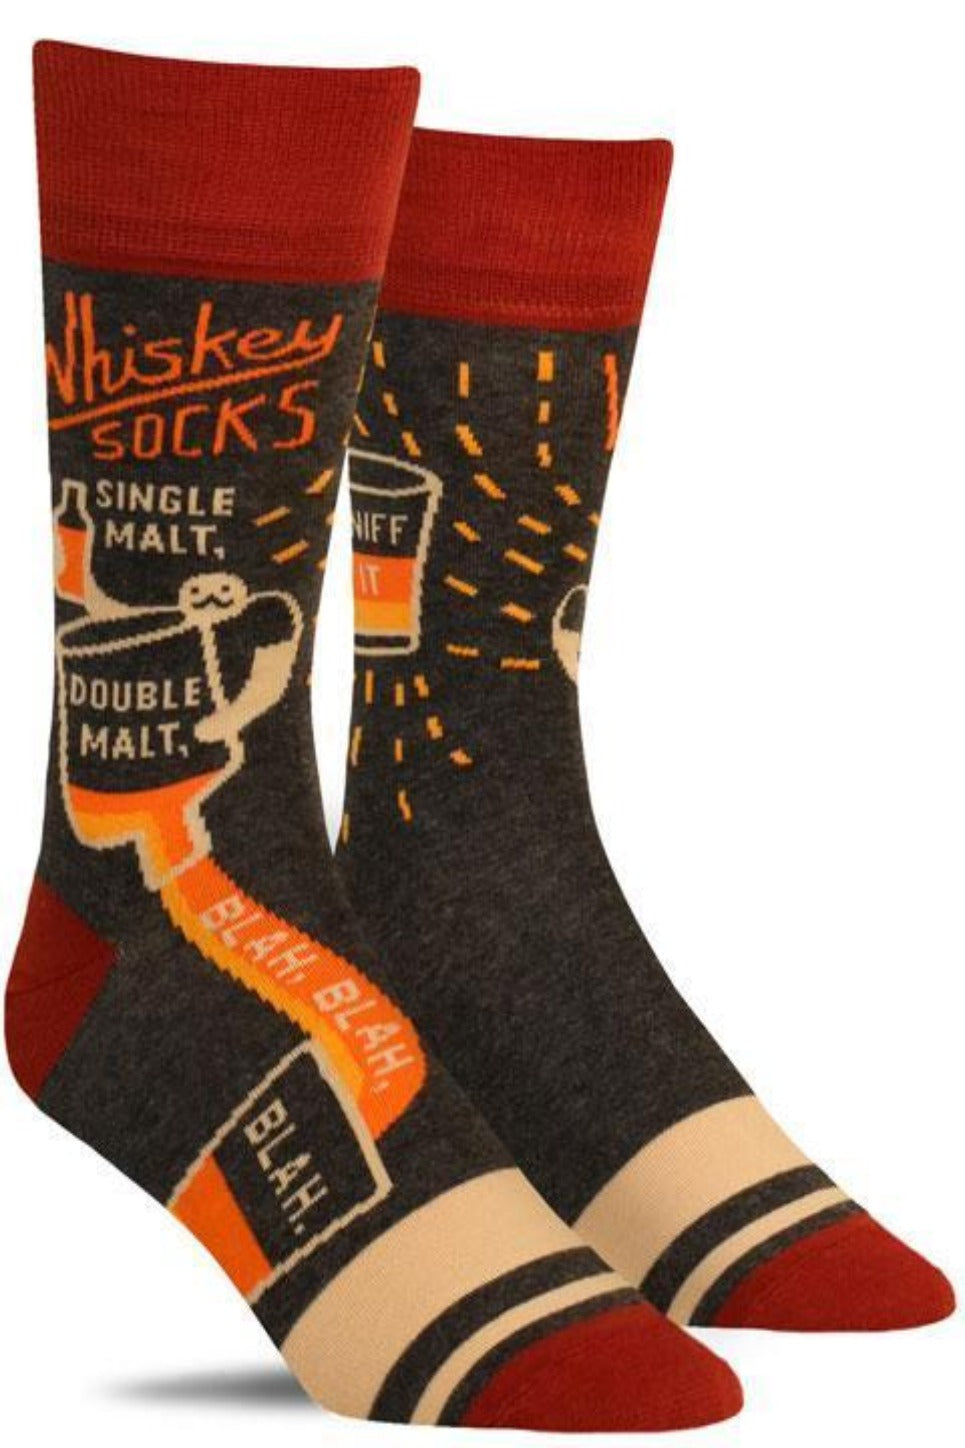 Whiskey Socks Men's Crew Socks